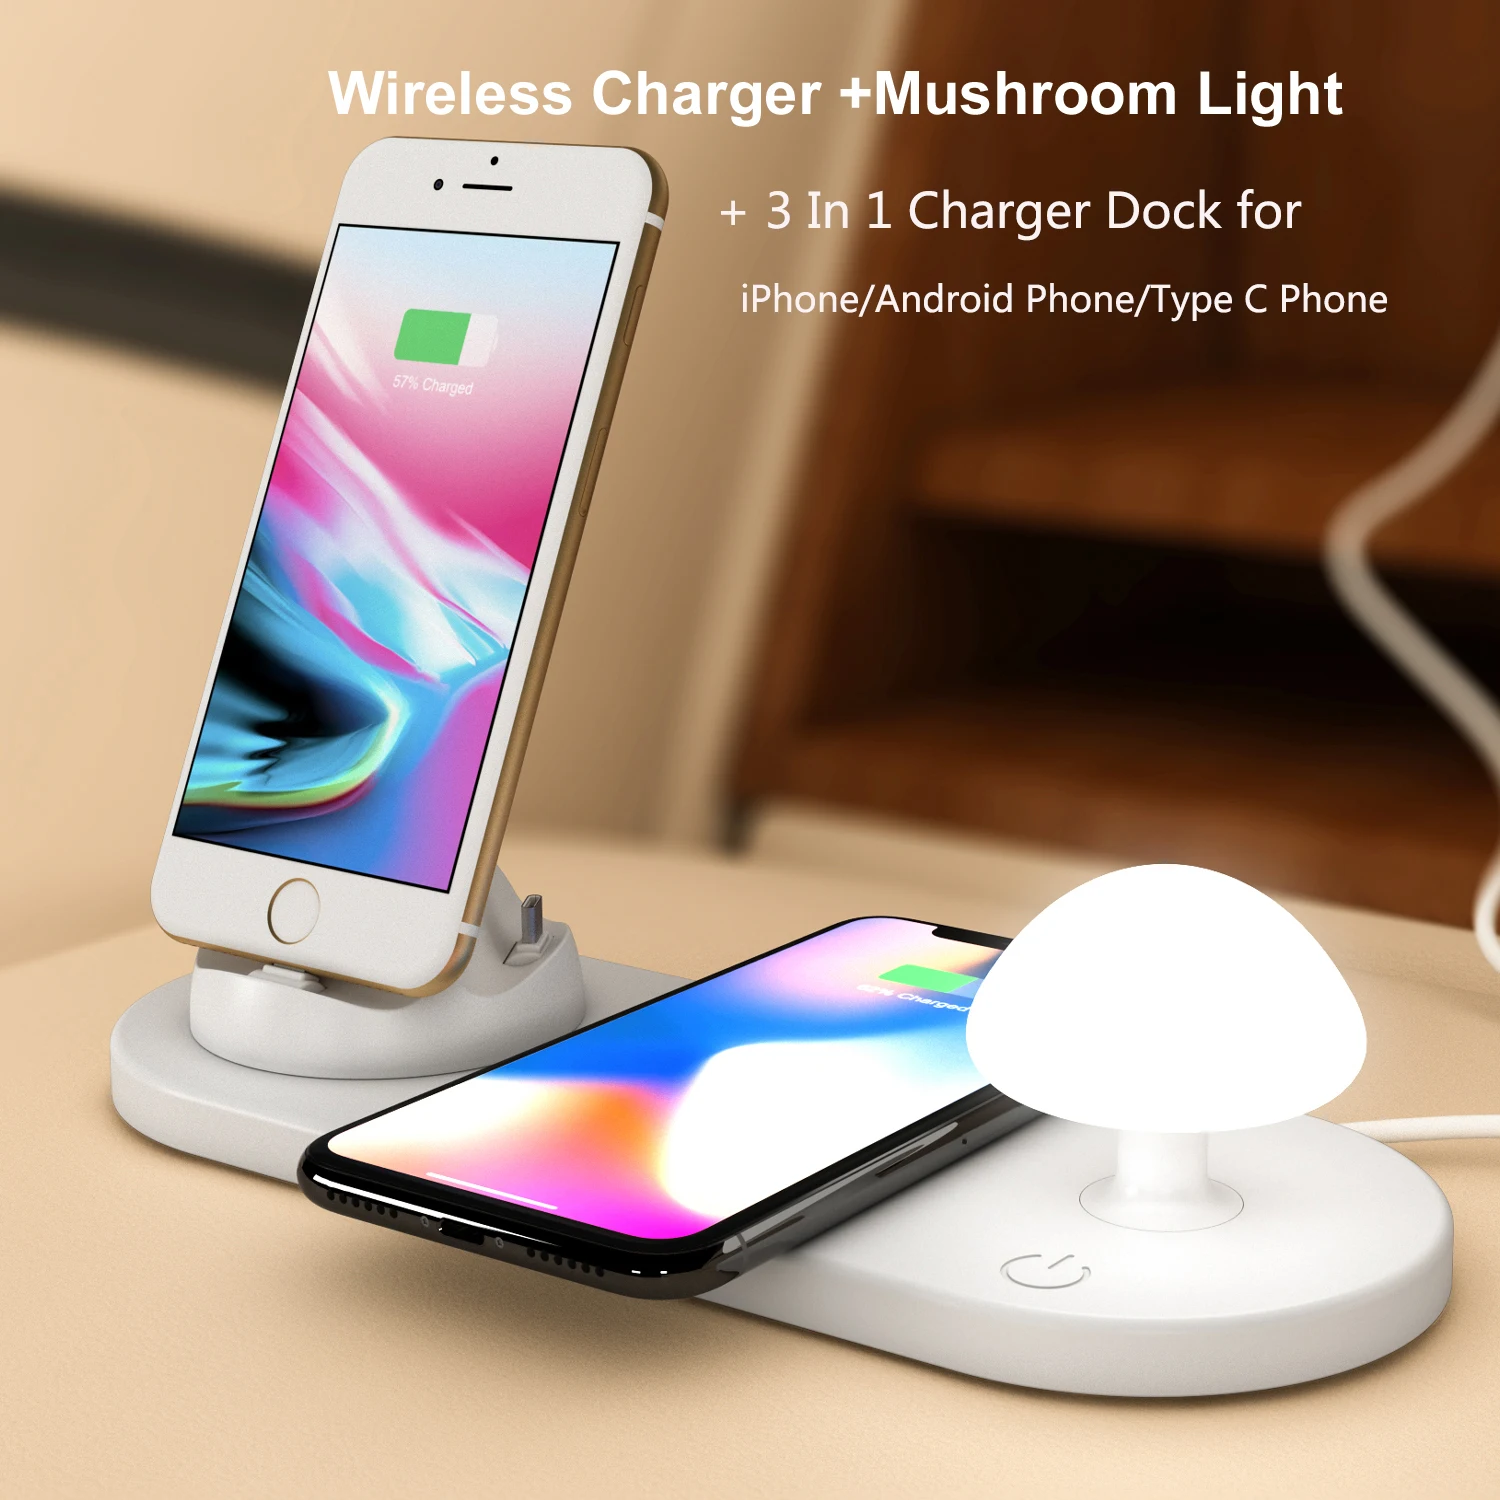 

Беспроводное быстрое зарядное устройство 5 в 1, светодиодная Ночная лампа в форме гриба, зарядная док-станция 3 в 1 для iPhone, телефона Android, телефона типа C